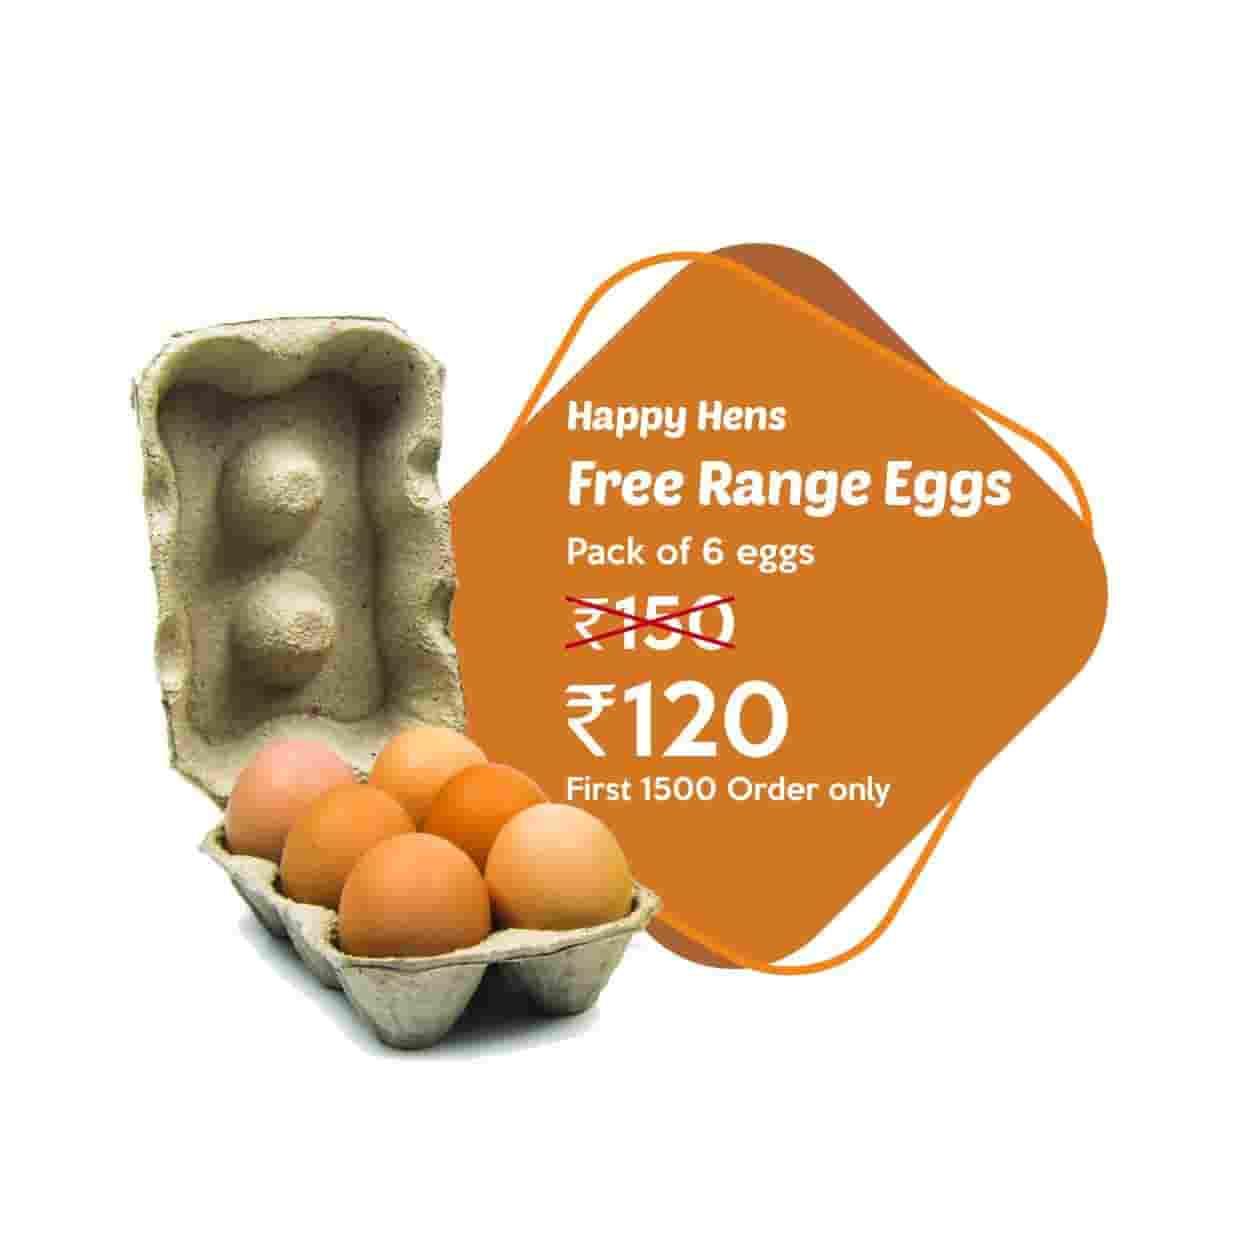 HappyHens Free Range Eggs